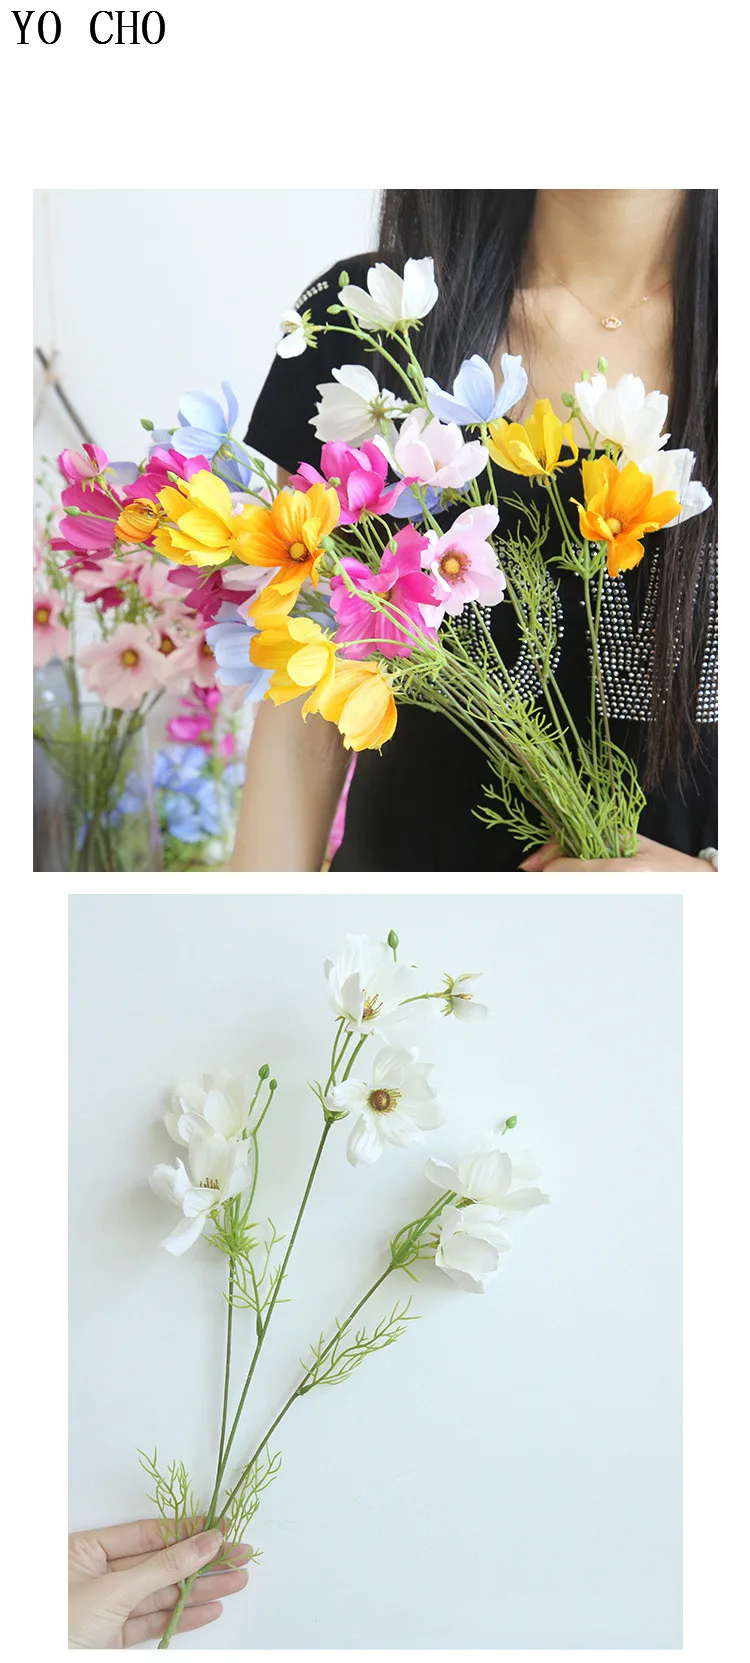 Йо Чо высокое качество искусственные цветы настоящий на прикосновение шелк Galsang цветок Coreopsis для рабочего стола дома сада DIY Декор Свадебный цветок